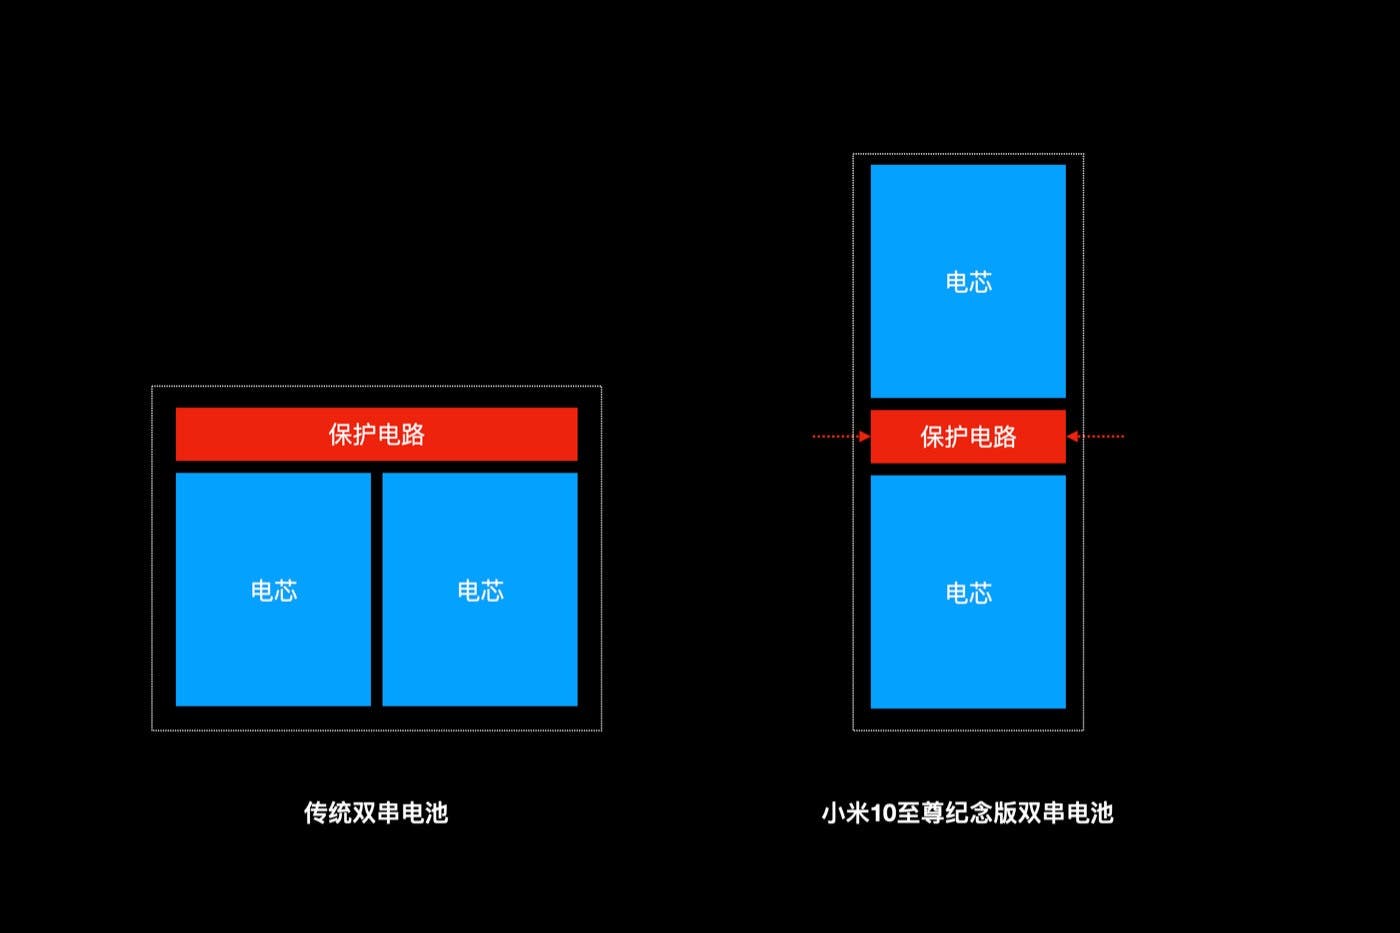 Xiaomi Mi 10 Ultra 120W fast charging